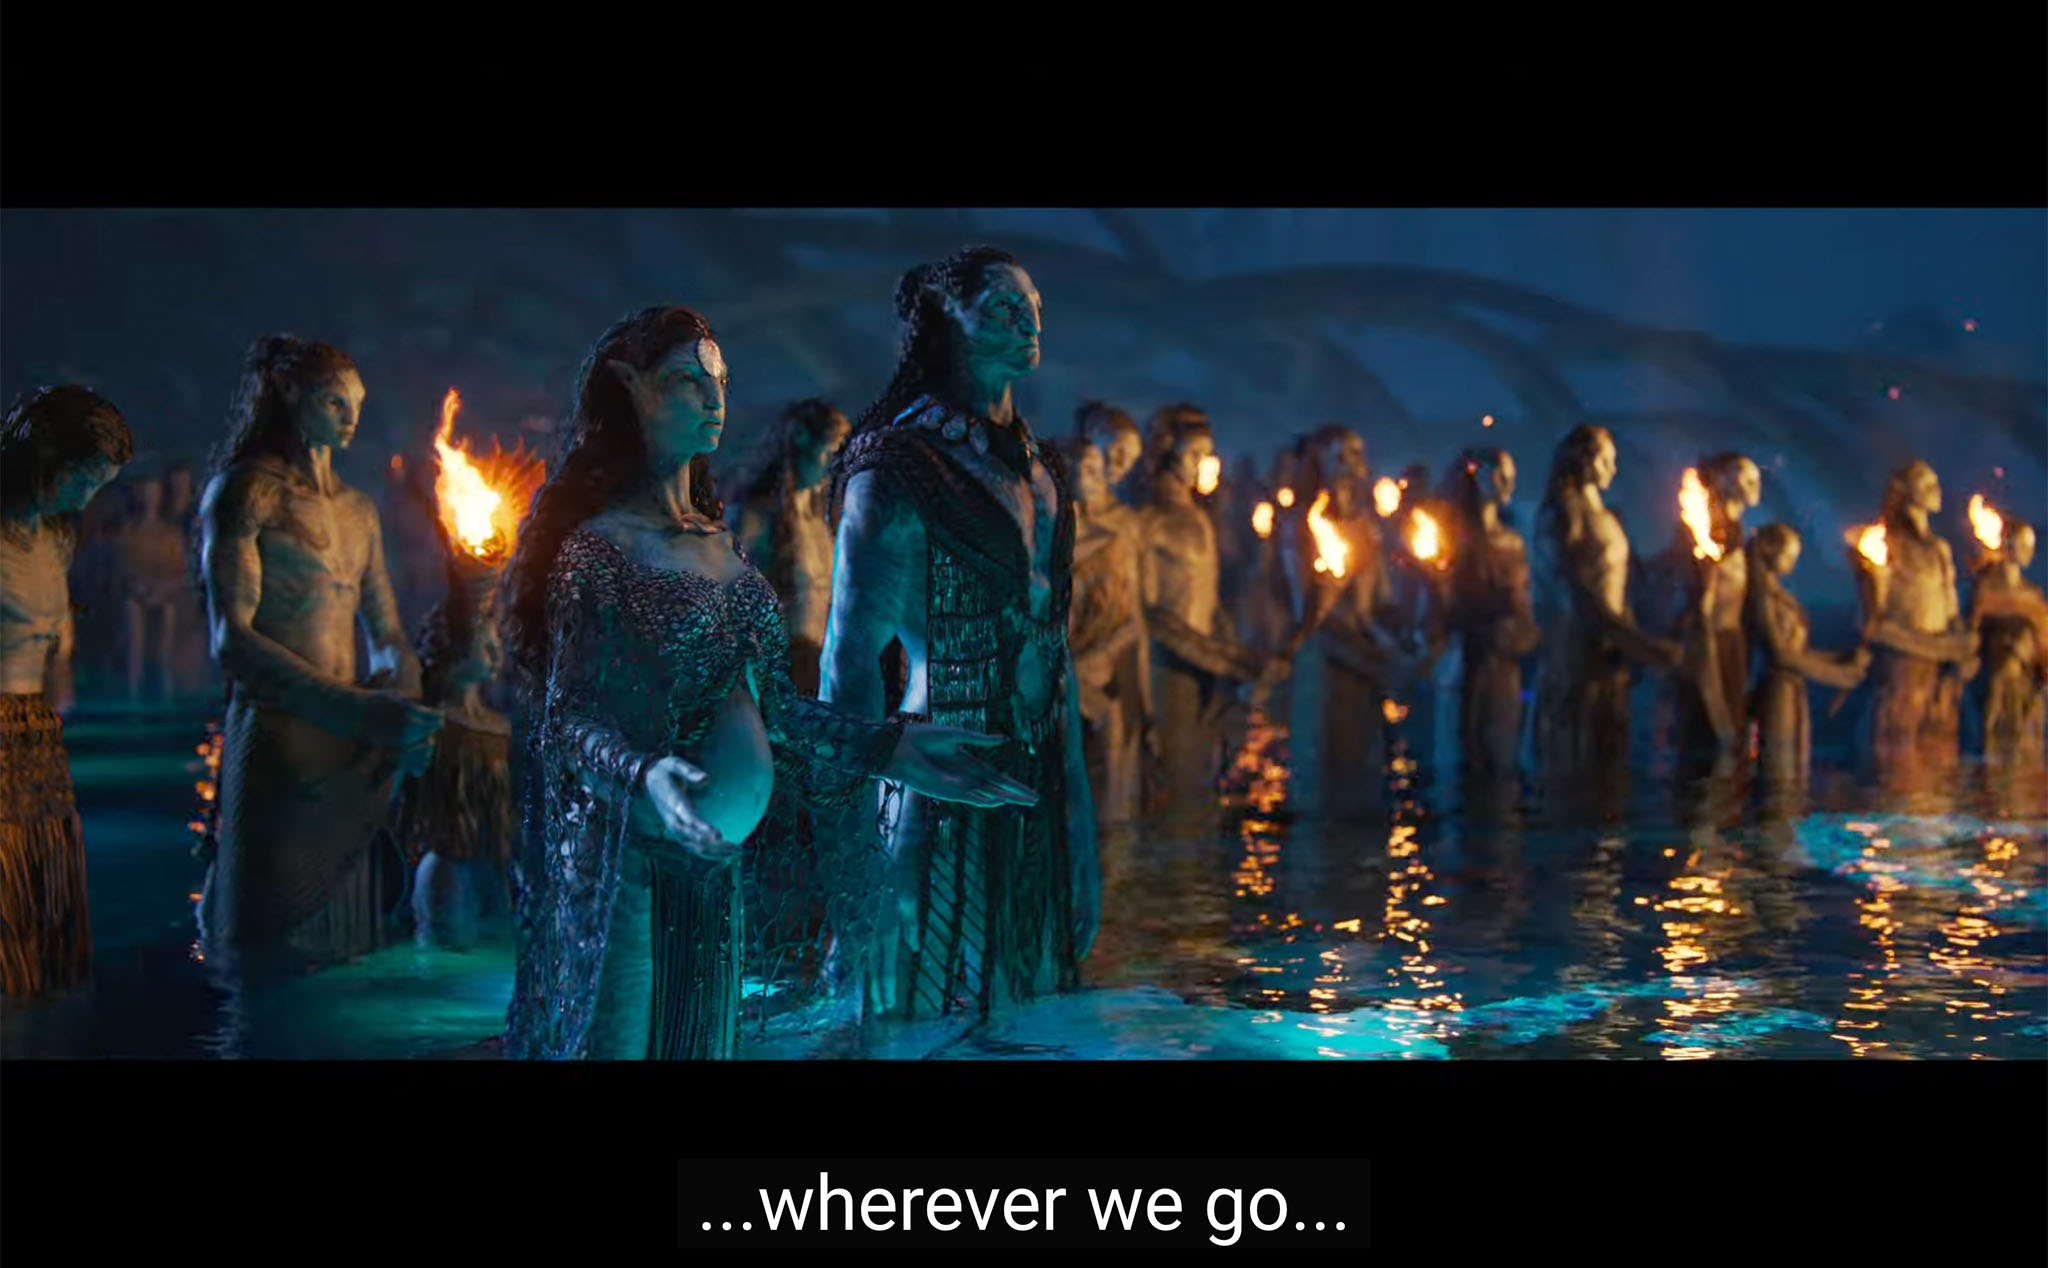 Mời anh em cùng xem trailer của bộ phim Avatar: The Way of Water